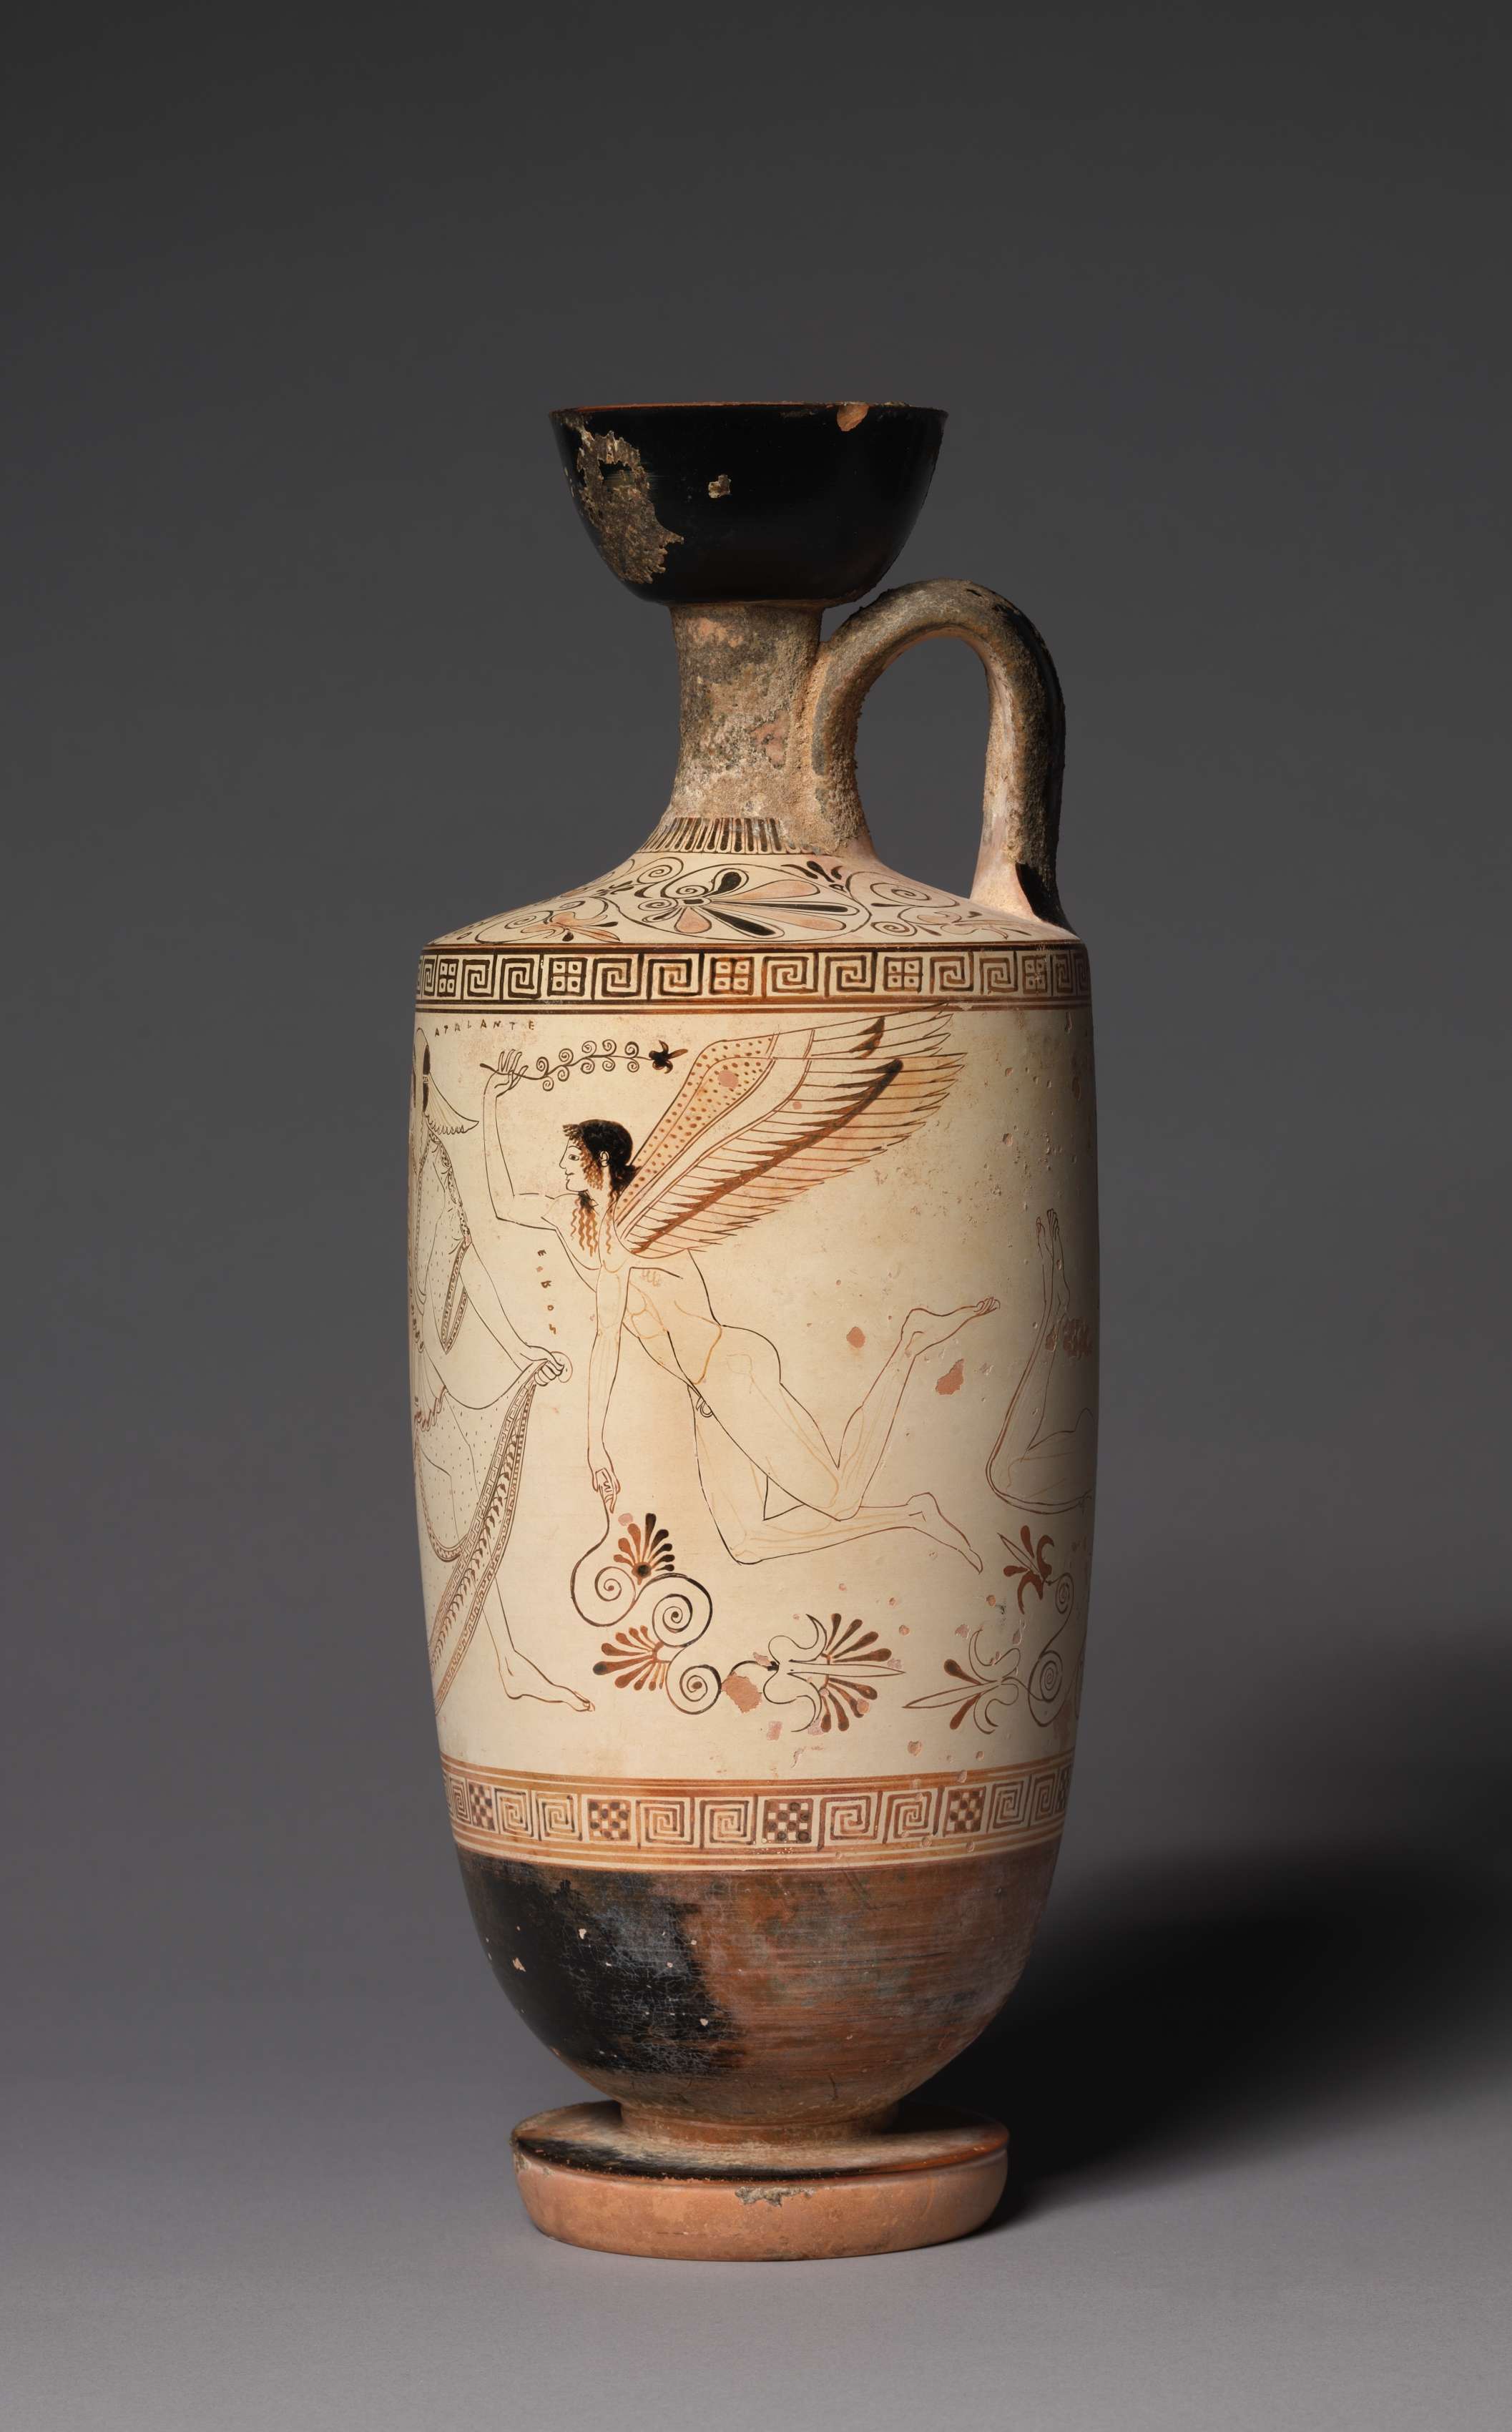 Η λήκυθος είναι τύπος ελληνικής αγγειοπλαστικής η οποία χρησίμευε για την τοποθέτηση ελαιόλαδου. White-Ground Lekythos (Oil Vessel): Atalanta and Erotes. 500-490 BC. Μουσείο Τέχνης του Κλίβελαντ.